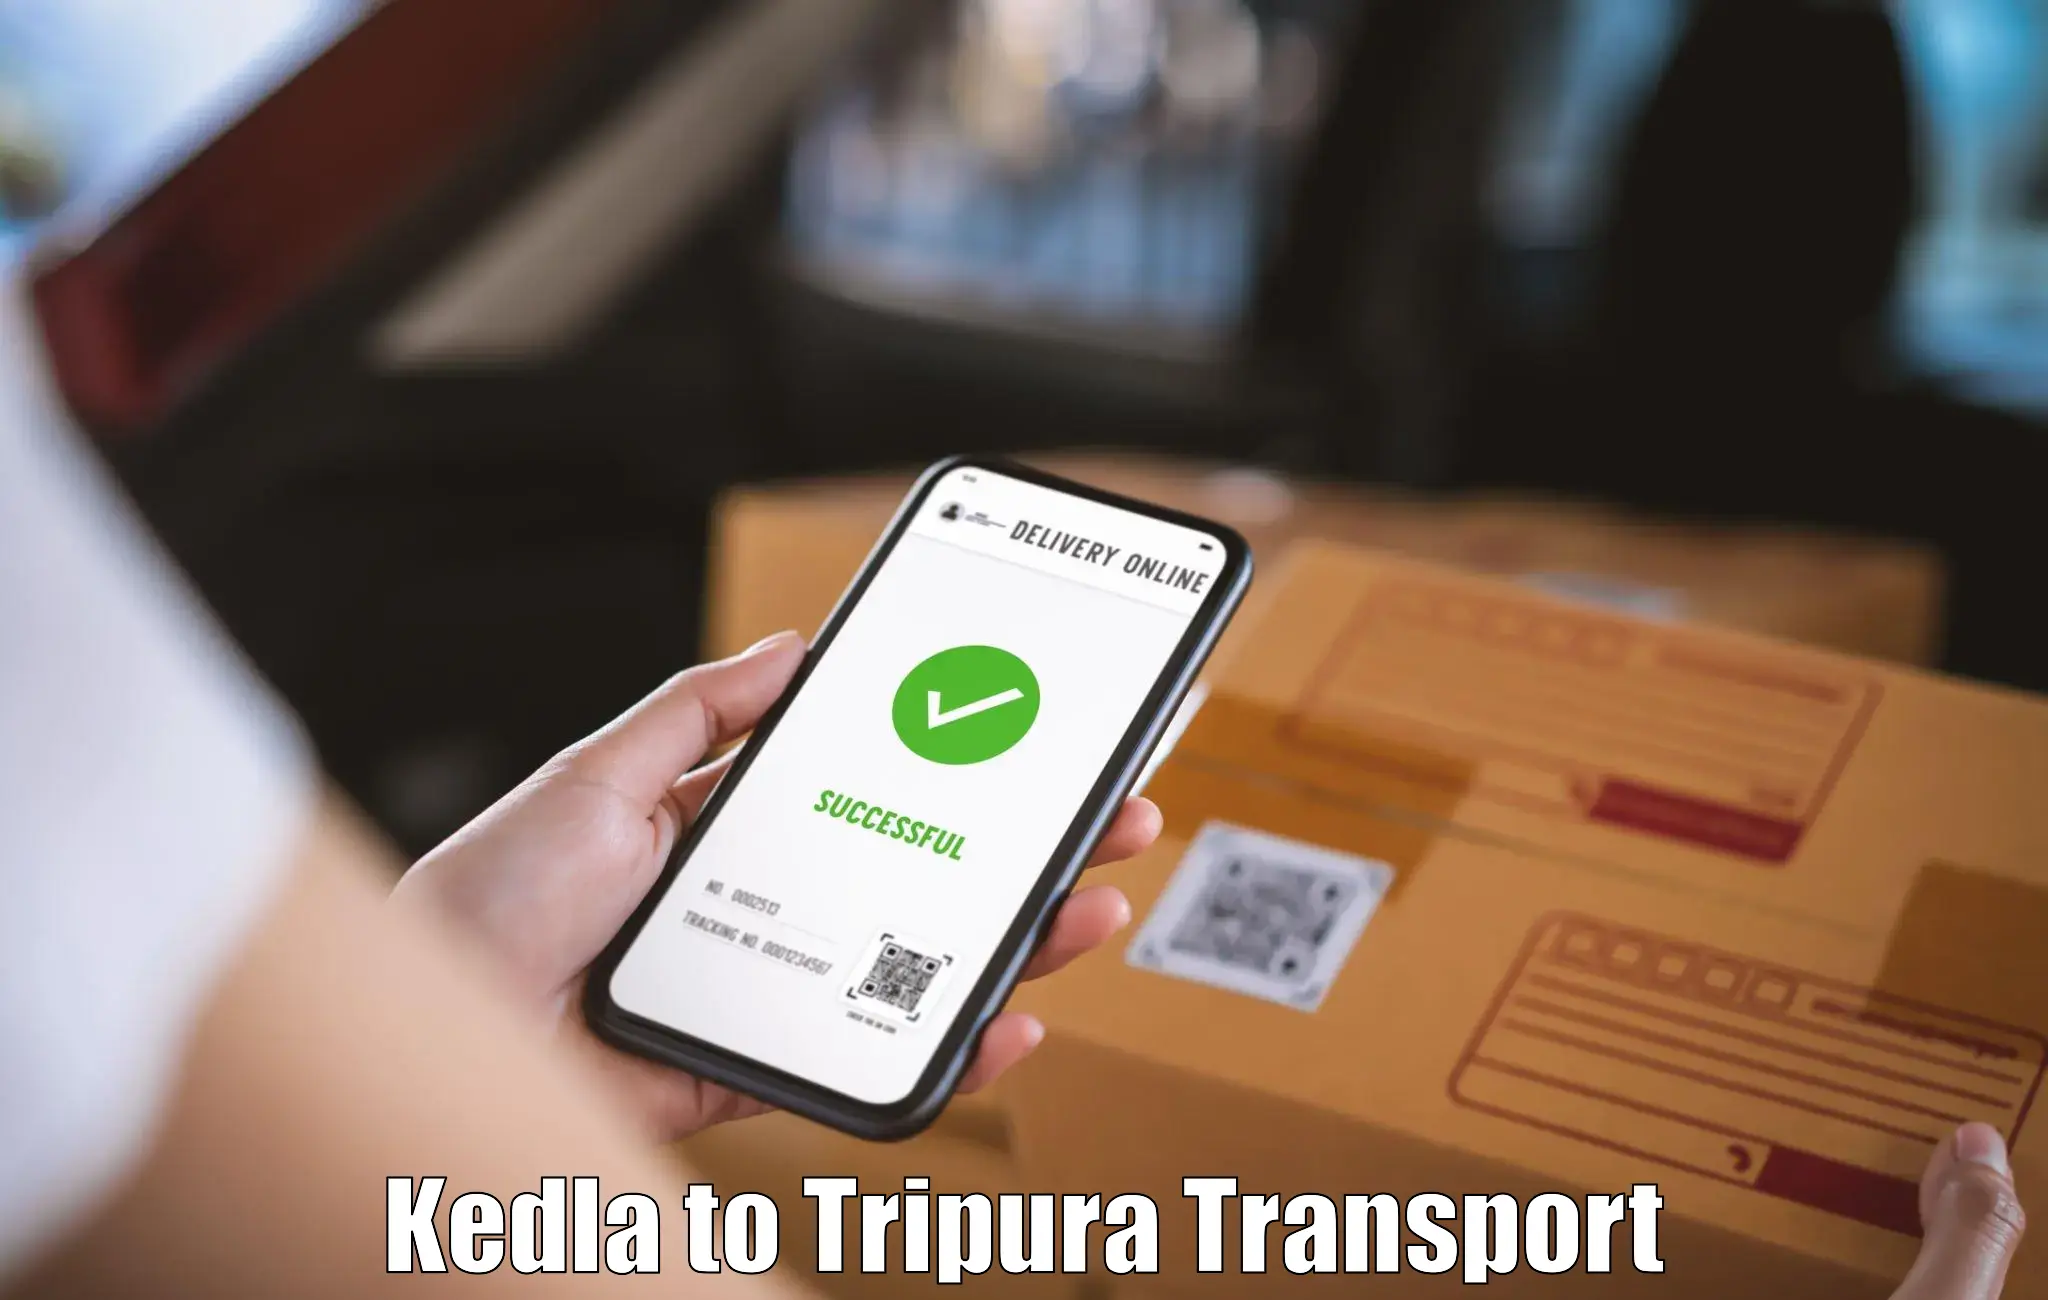 Lorry transport service Kedla to Teliamura